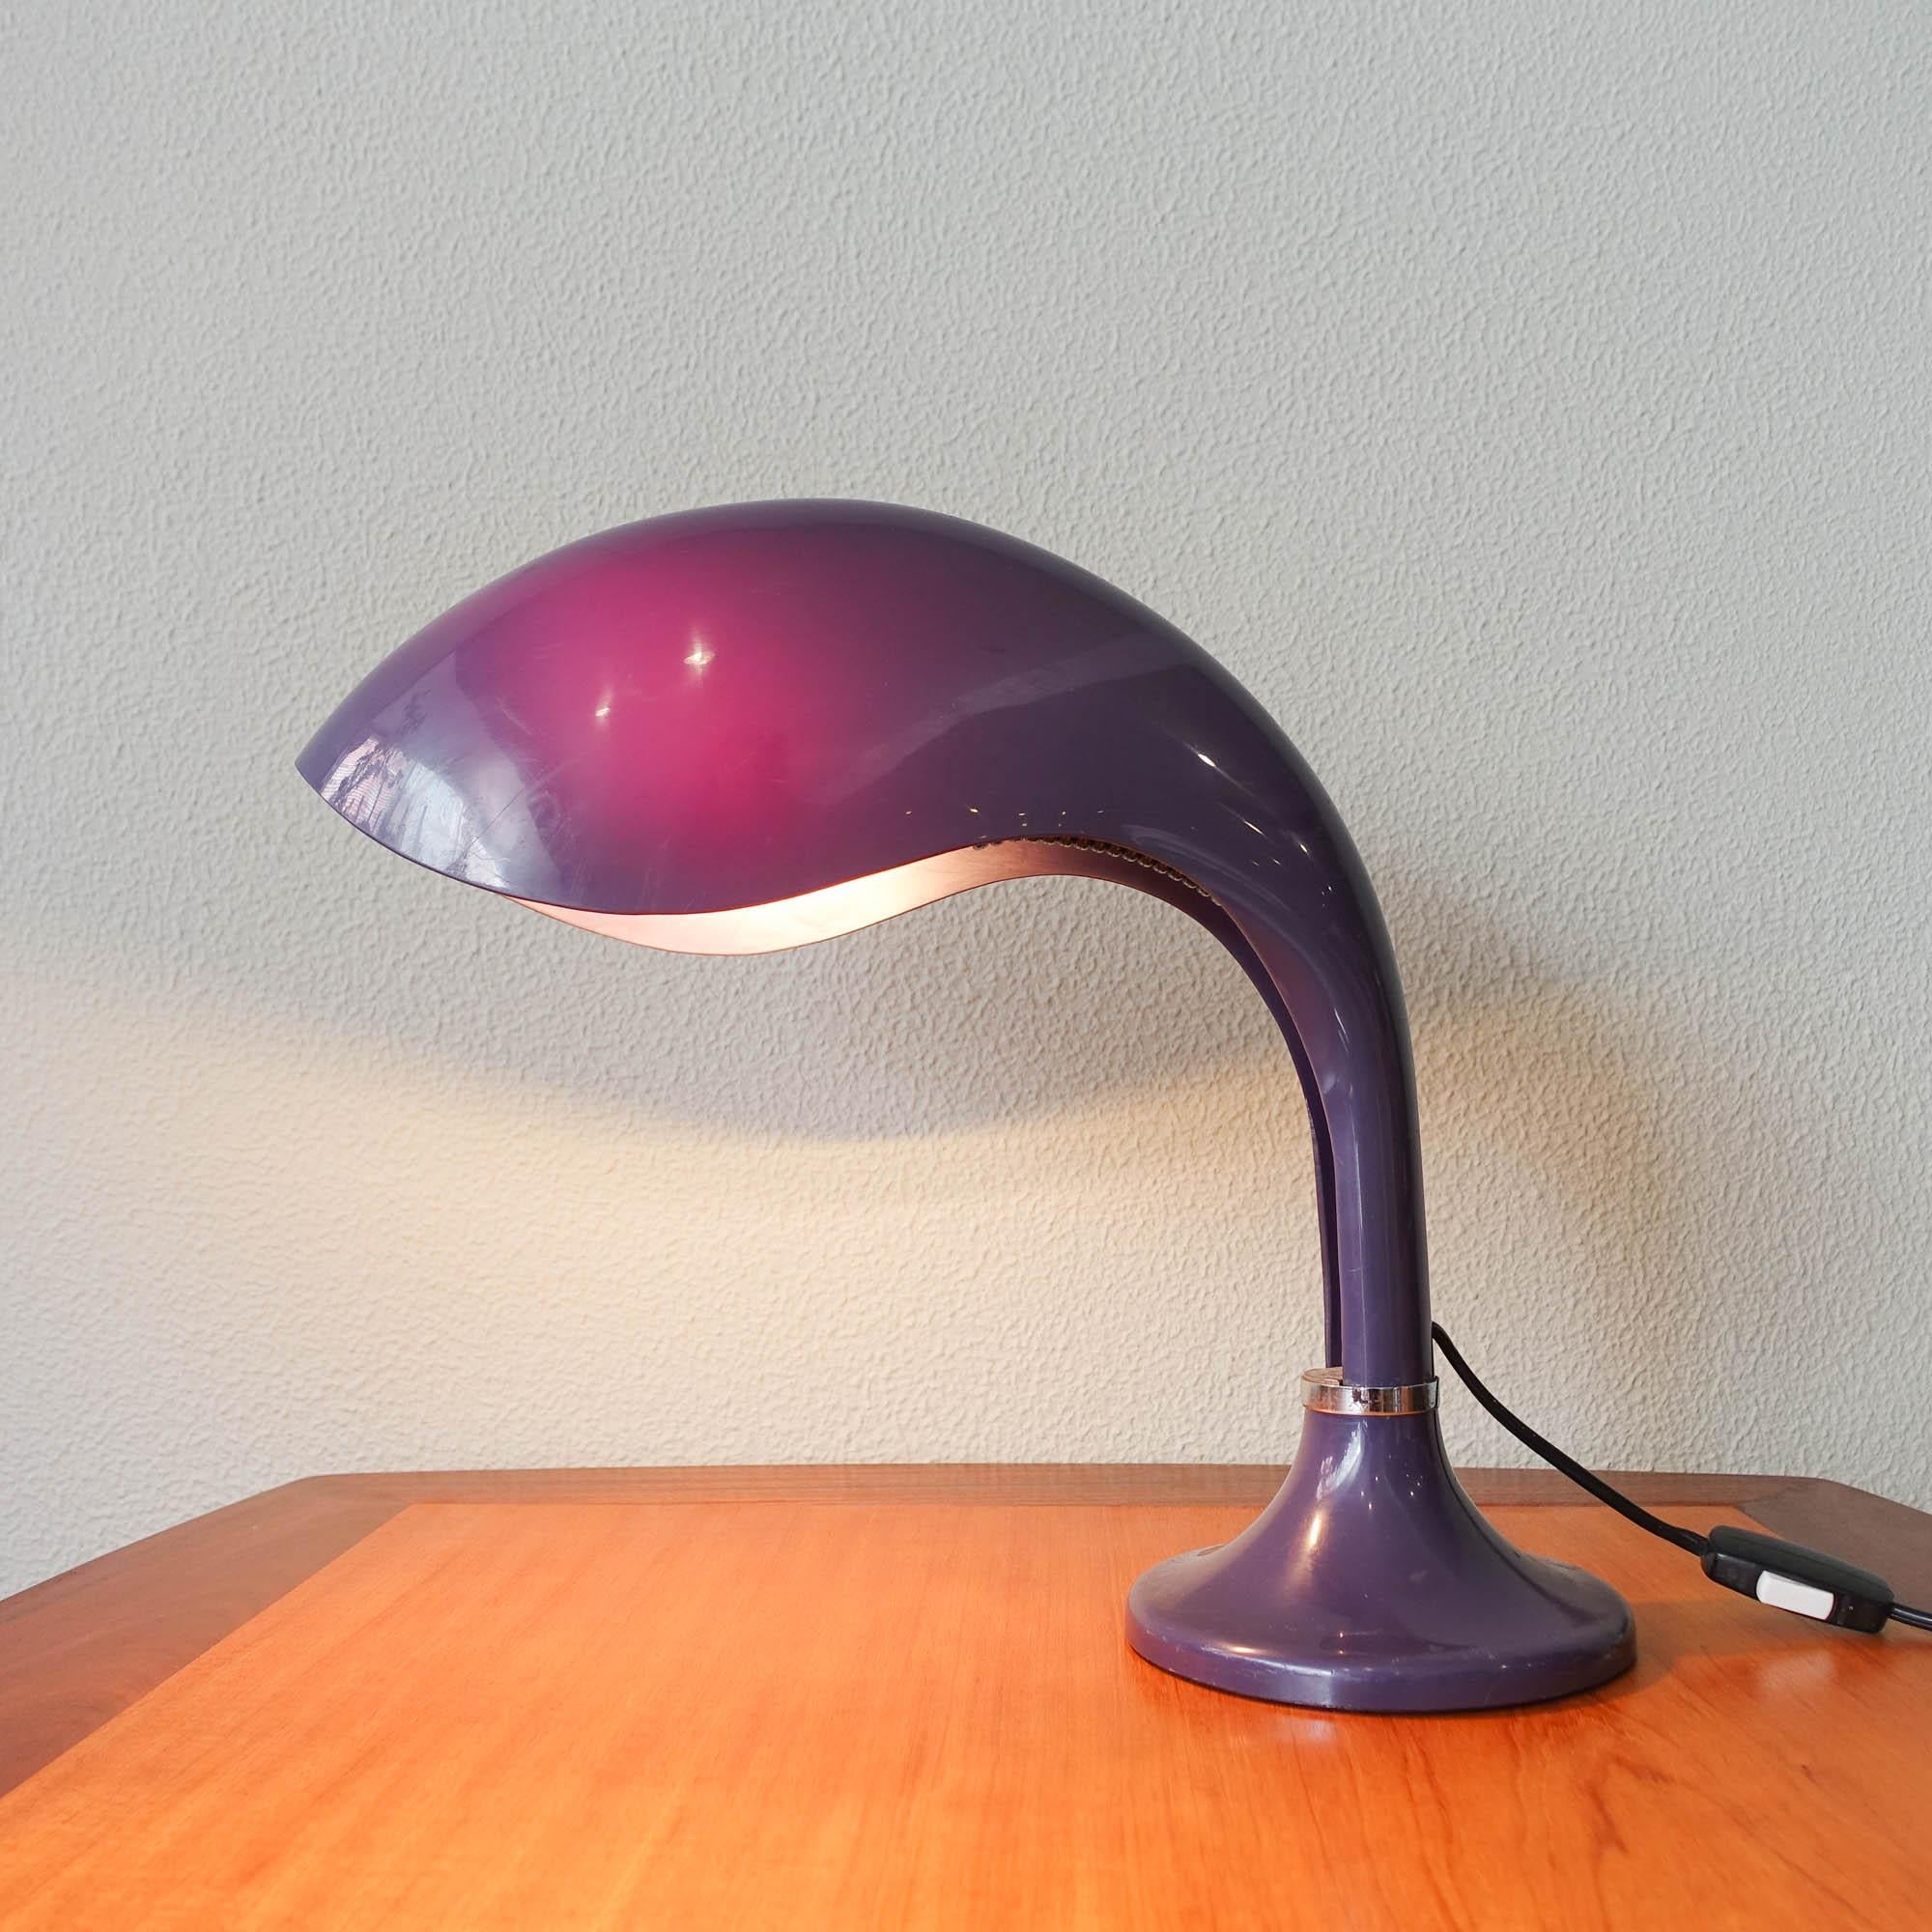 Cette lampe de table 'Rhea' a été conçue par Marcello Cuneo pour Ampaglas, dans les années 1960, en Italie.
Abat-jour en plastique avec un design incurvé particulier, et un type de matériau qui laisse transparaître la lumière en créant un effet